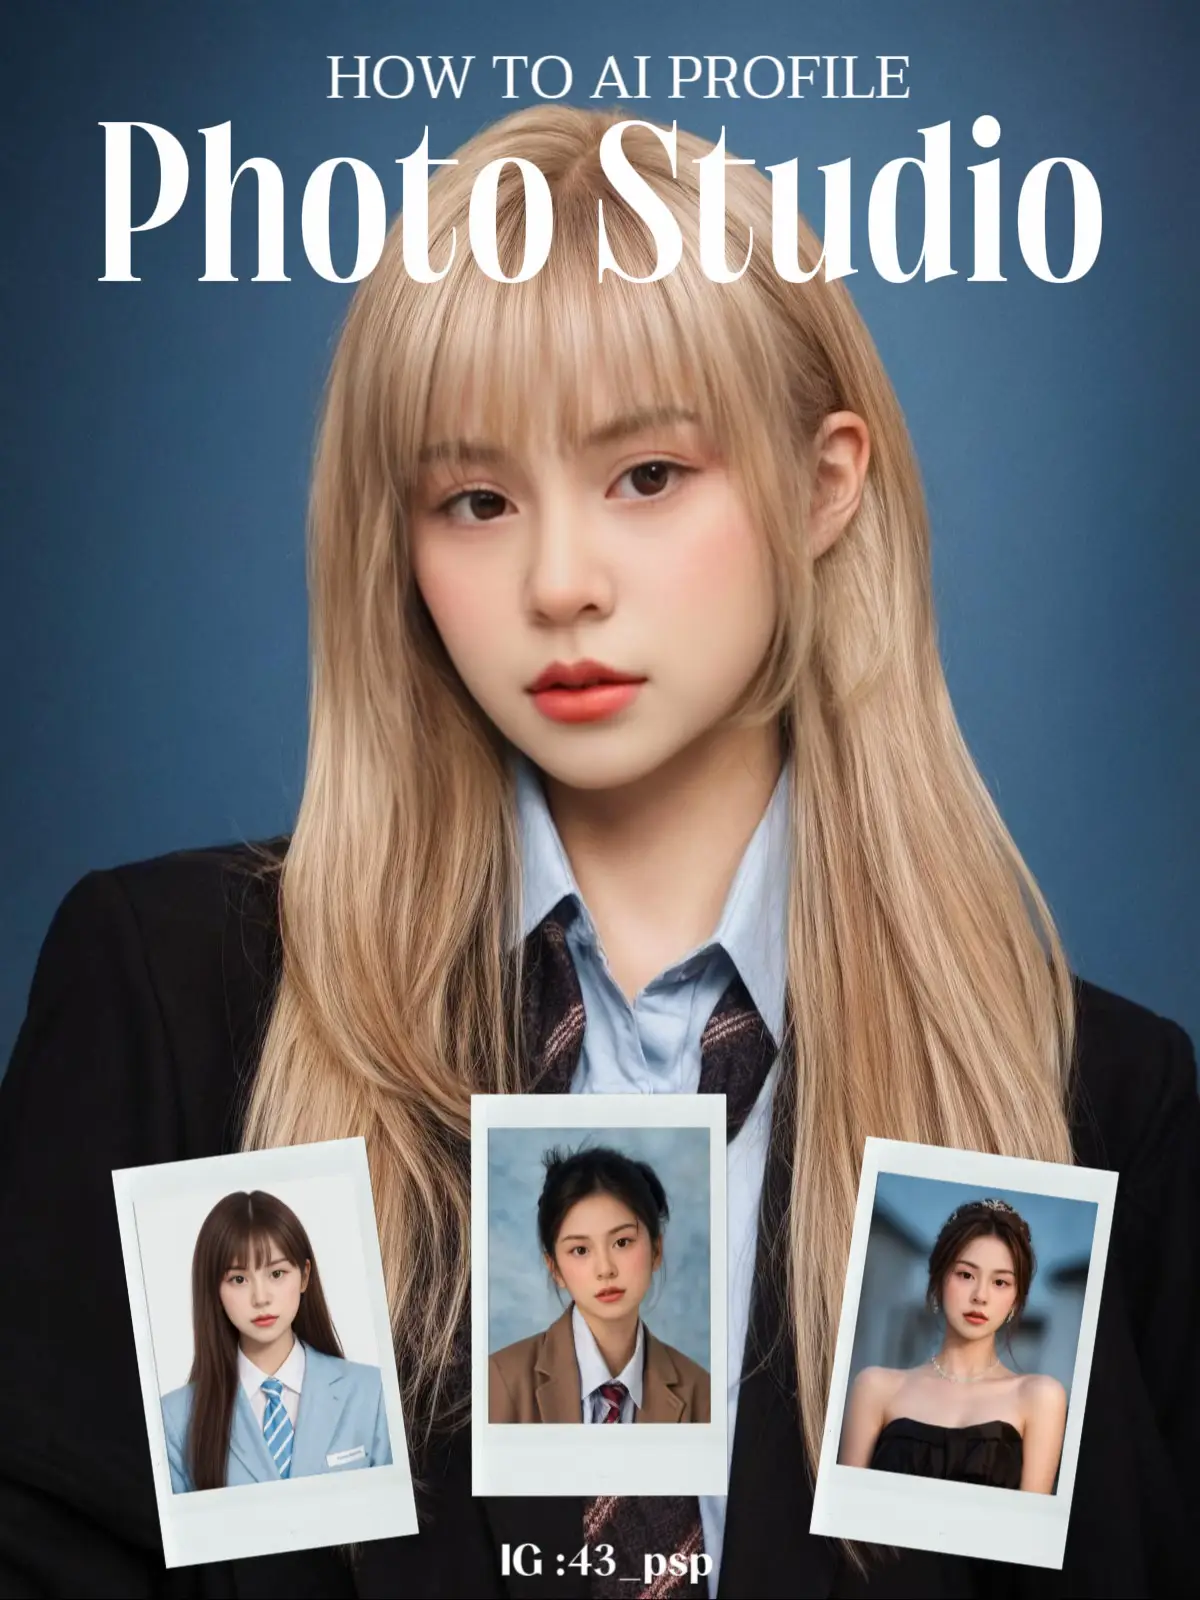 NEWS IN FOCUS] 'Korean-style' AI photos become social media hit